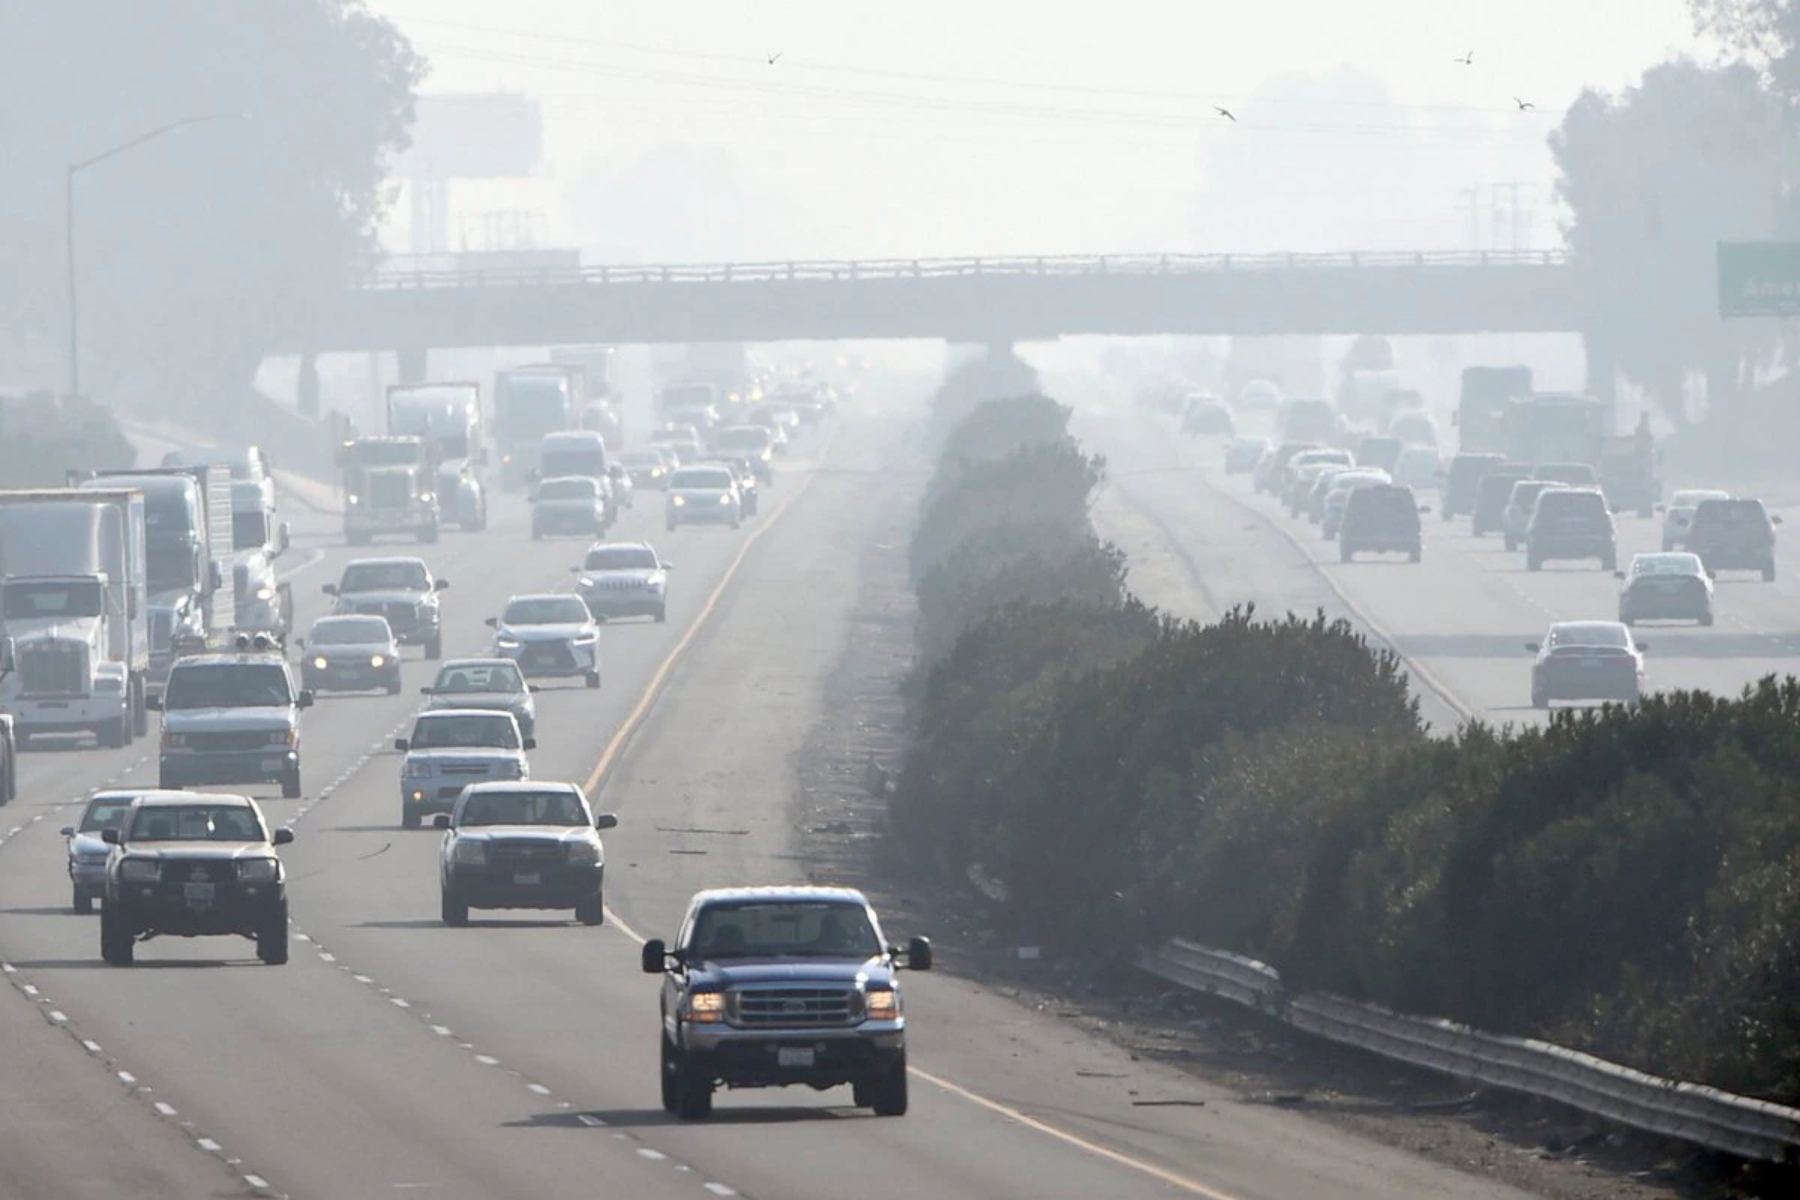 ΗΠΑ: Η EPA προτείνει αυστηρότερους κανόνες για την ατμοσφαιρική ρύπανση